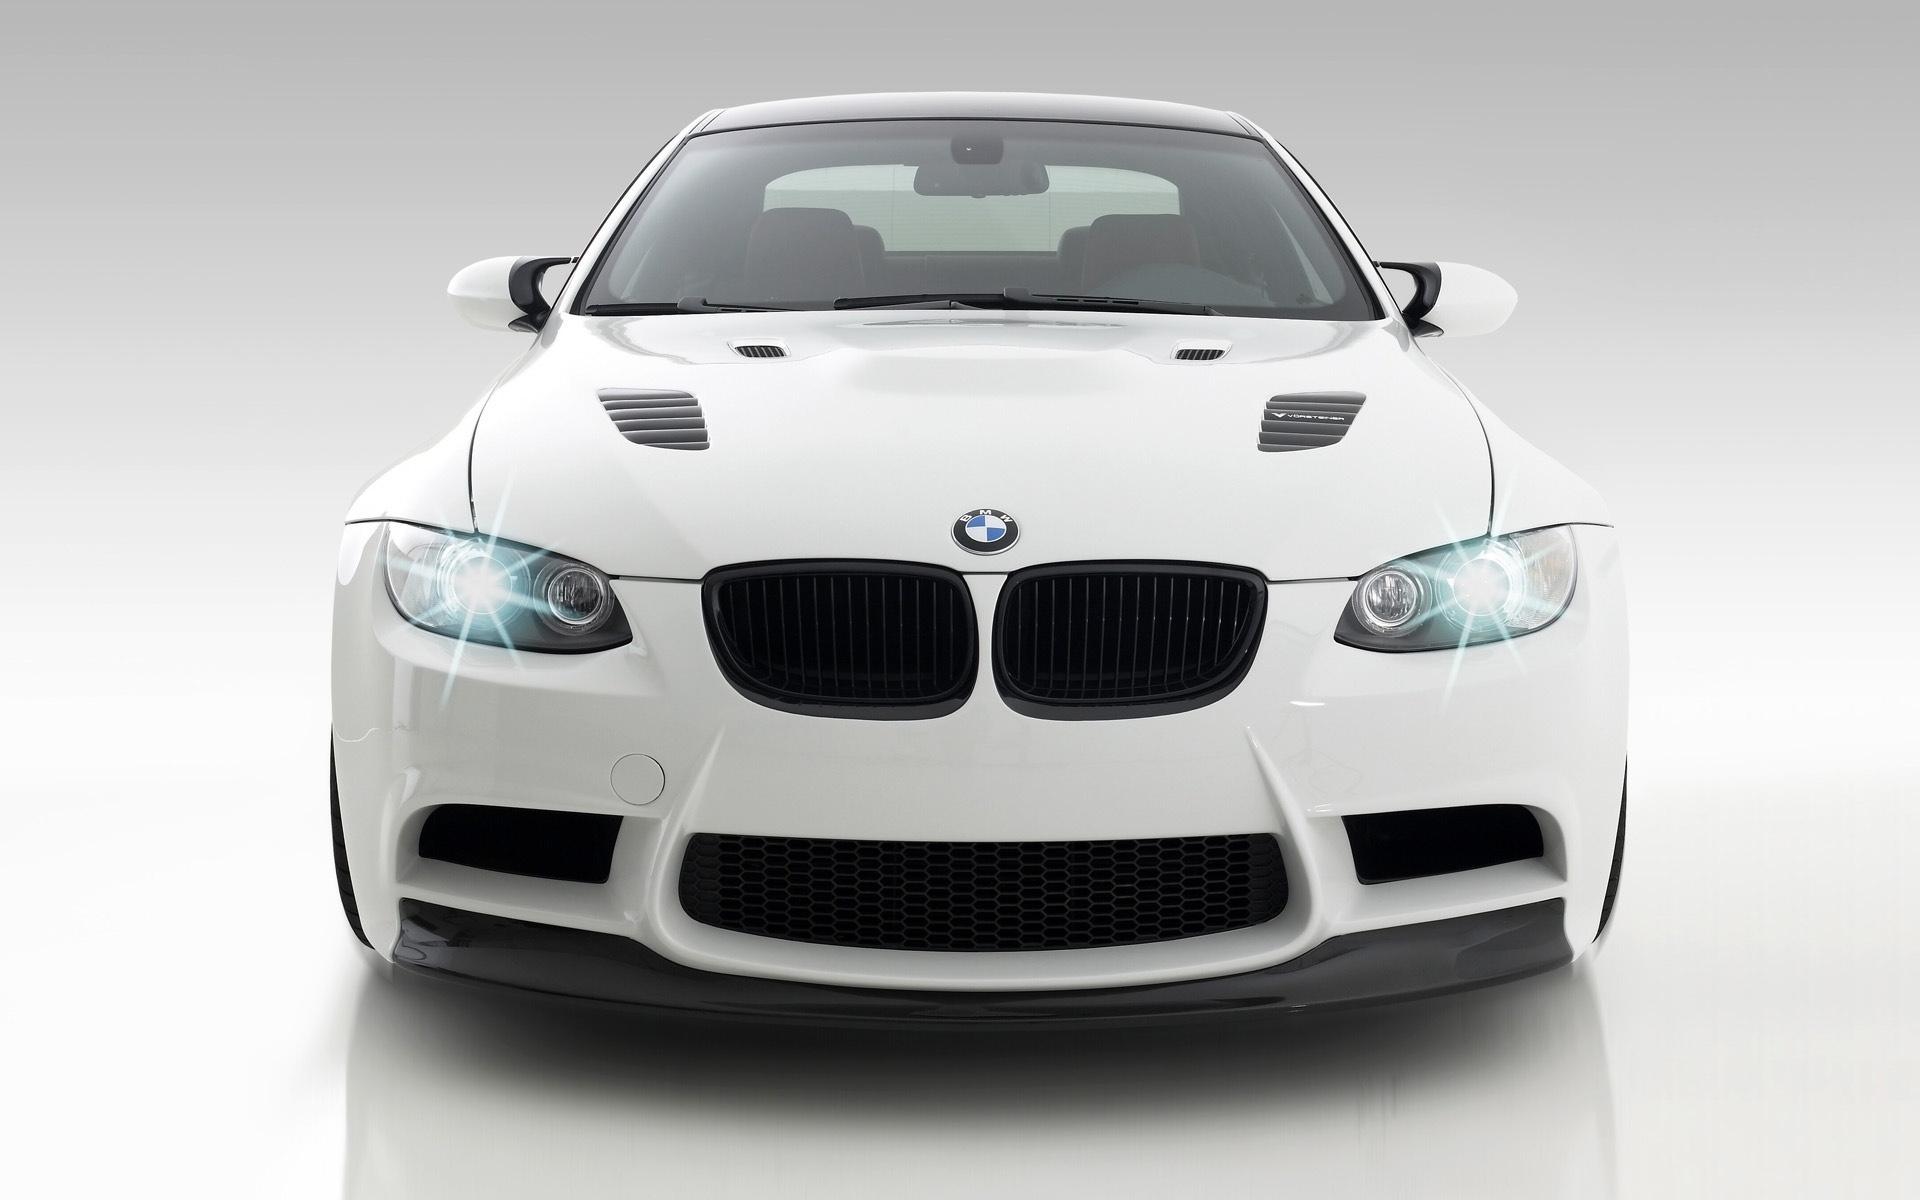 Vorsteiner GTS3 BMW M3 Front 2009 for 1920 x 1200 widescreen resolution